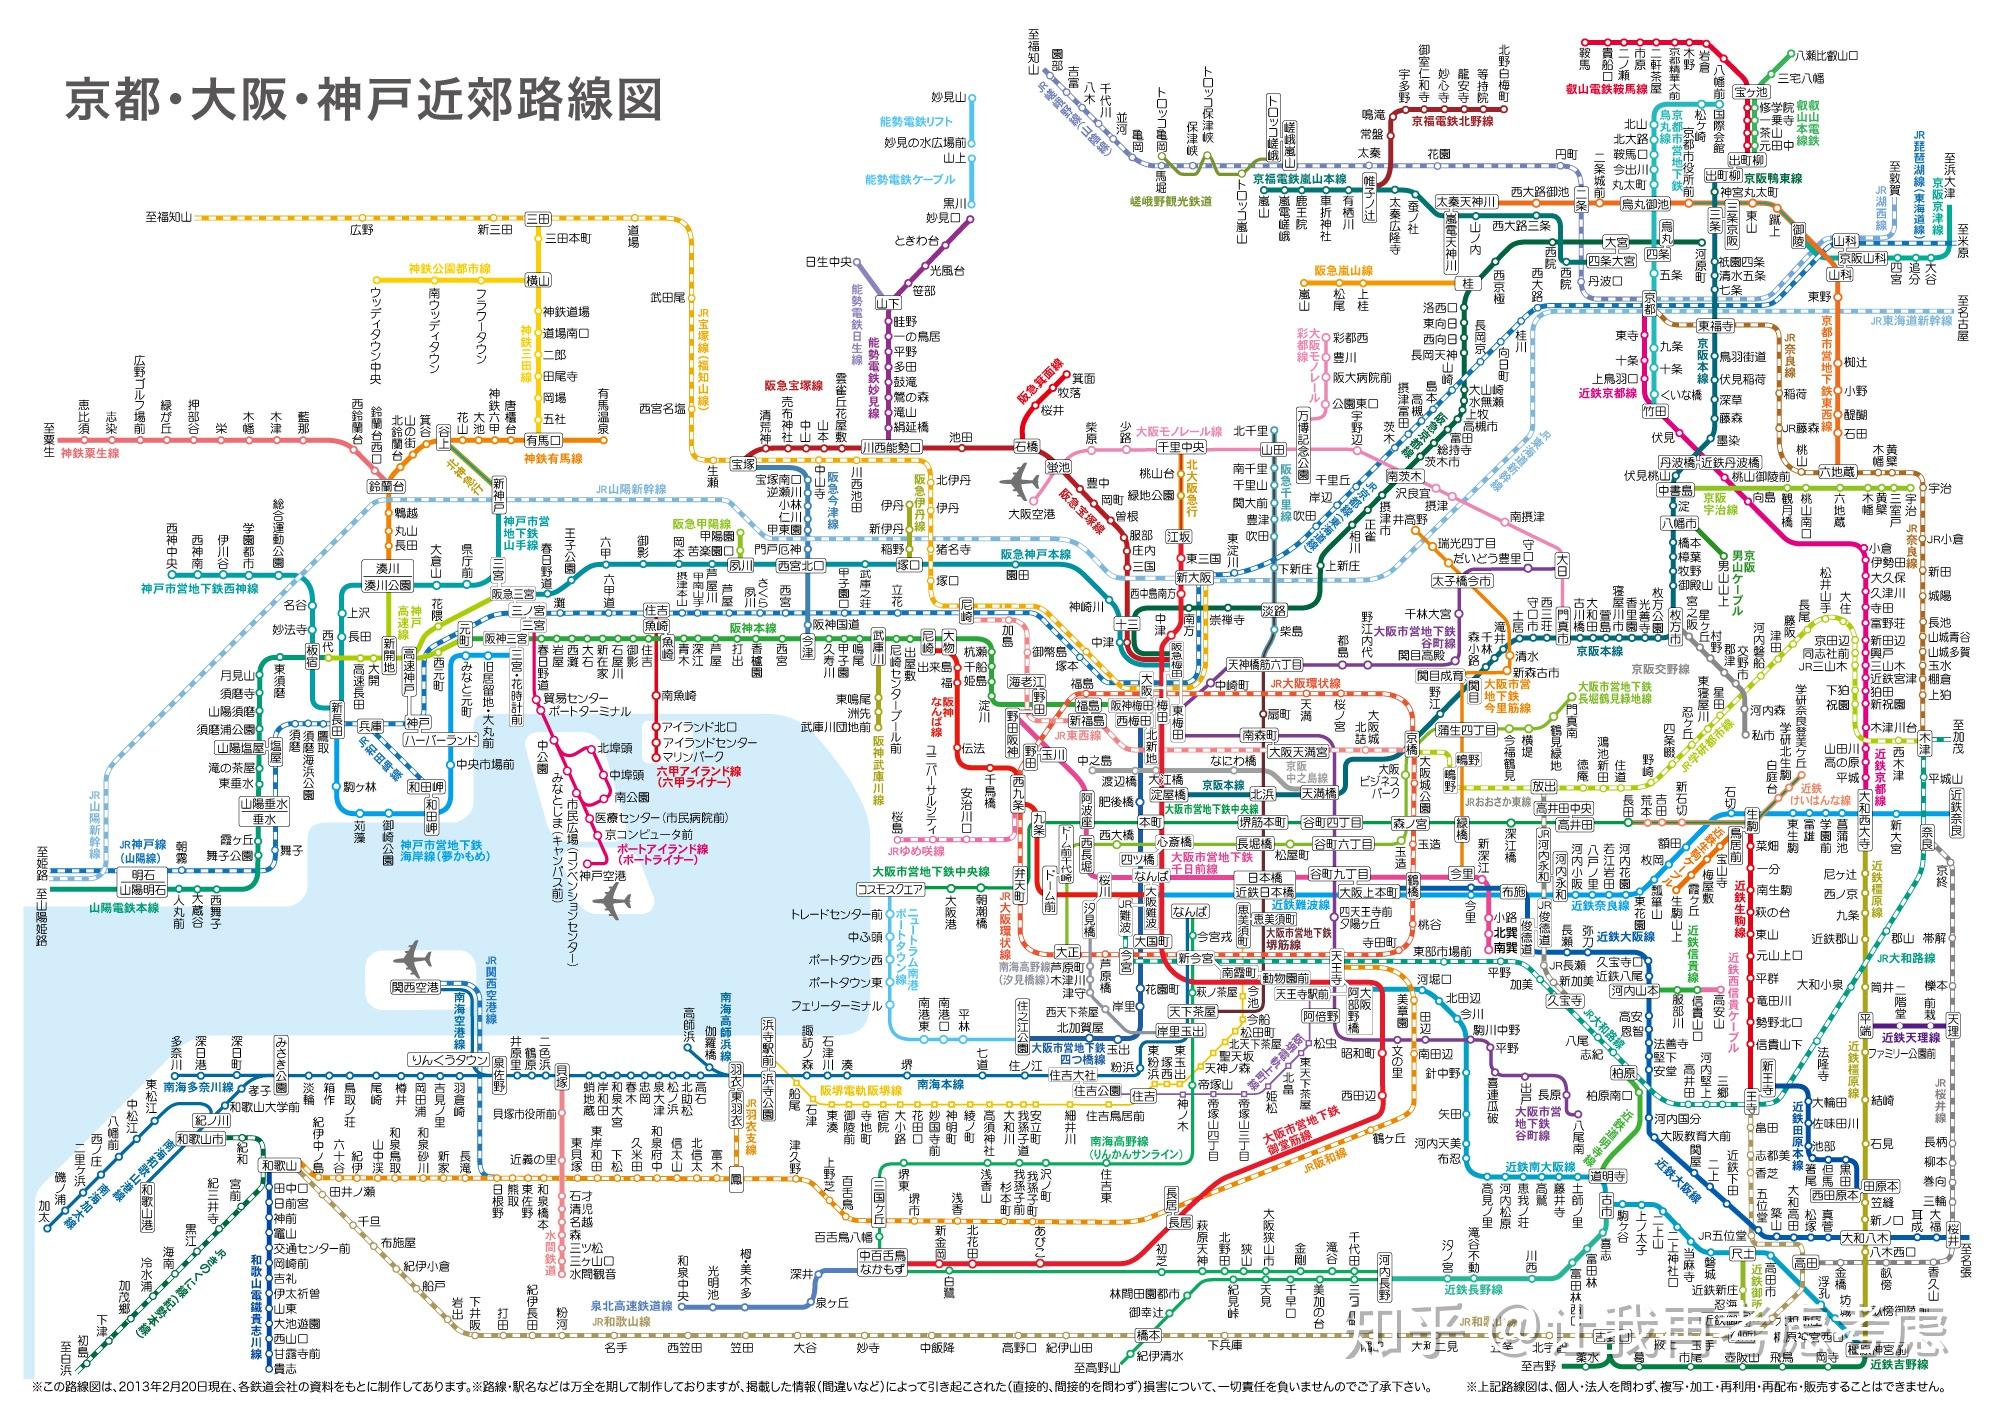 关于日本大都市圈的轨道交通,深入了解过的轨道迷都知道从线路里程,到